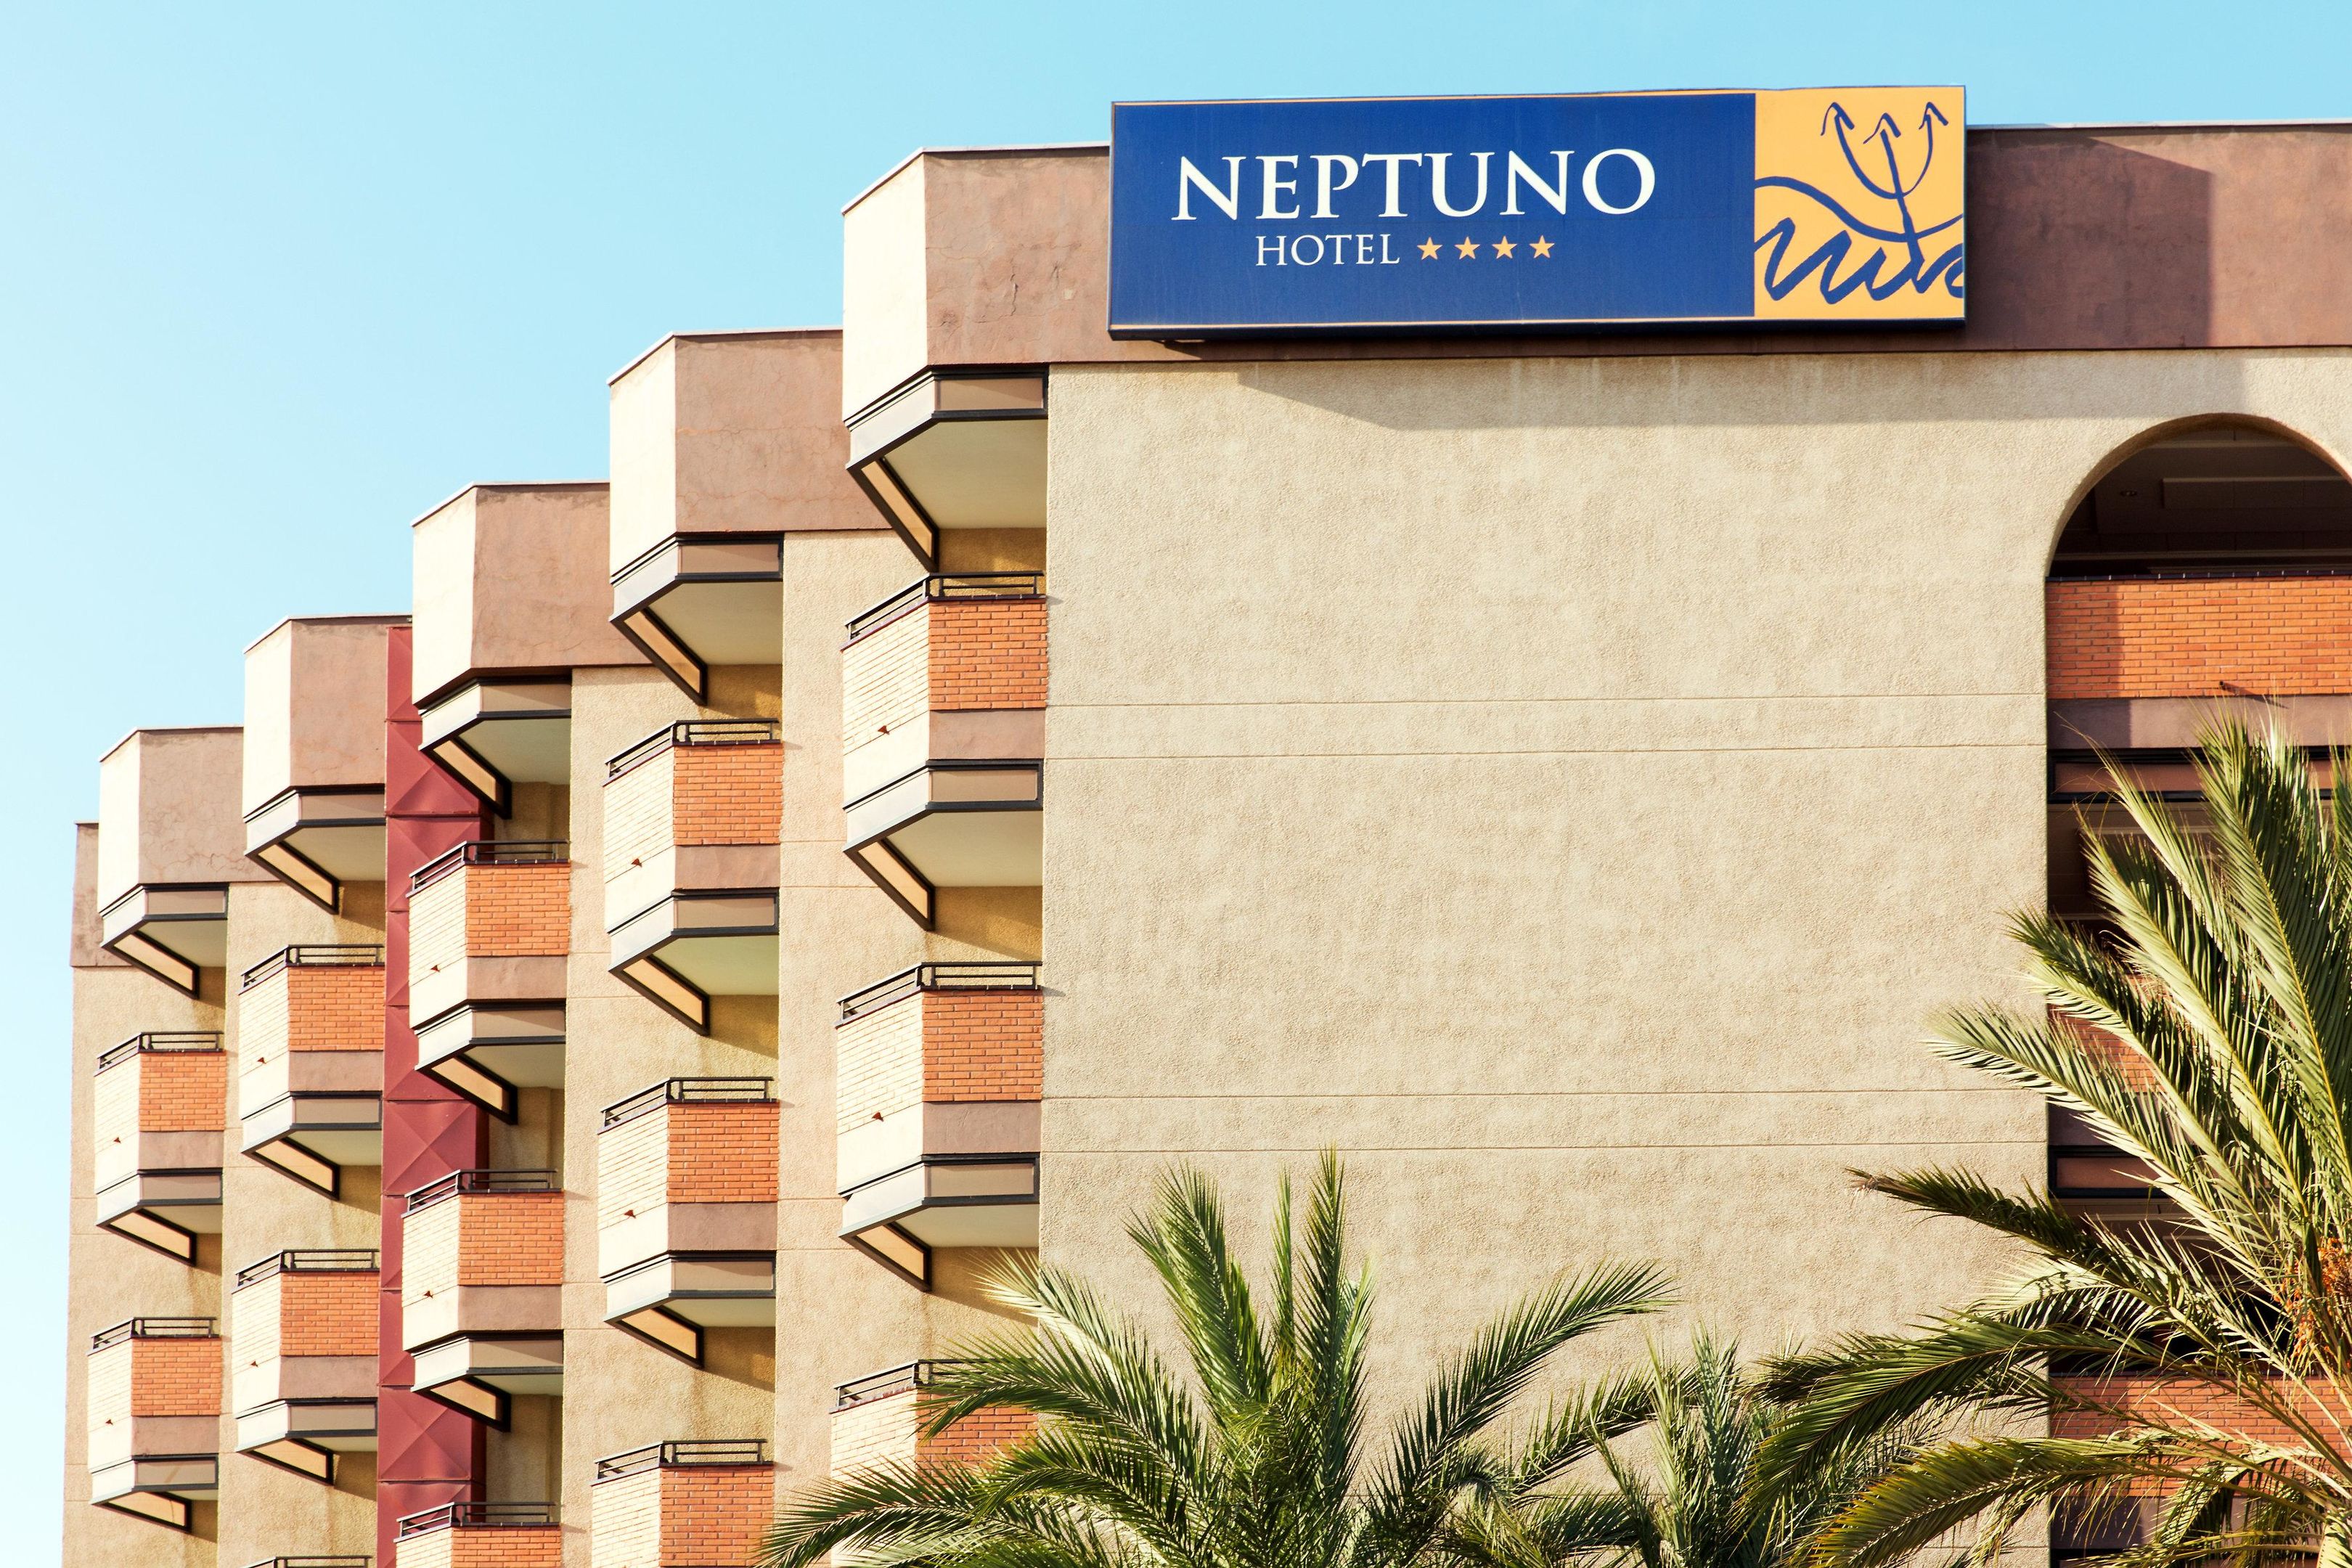 Mur Hotel Neptuno